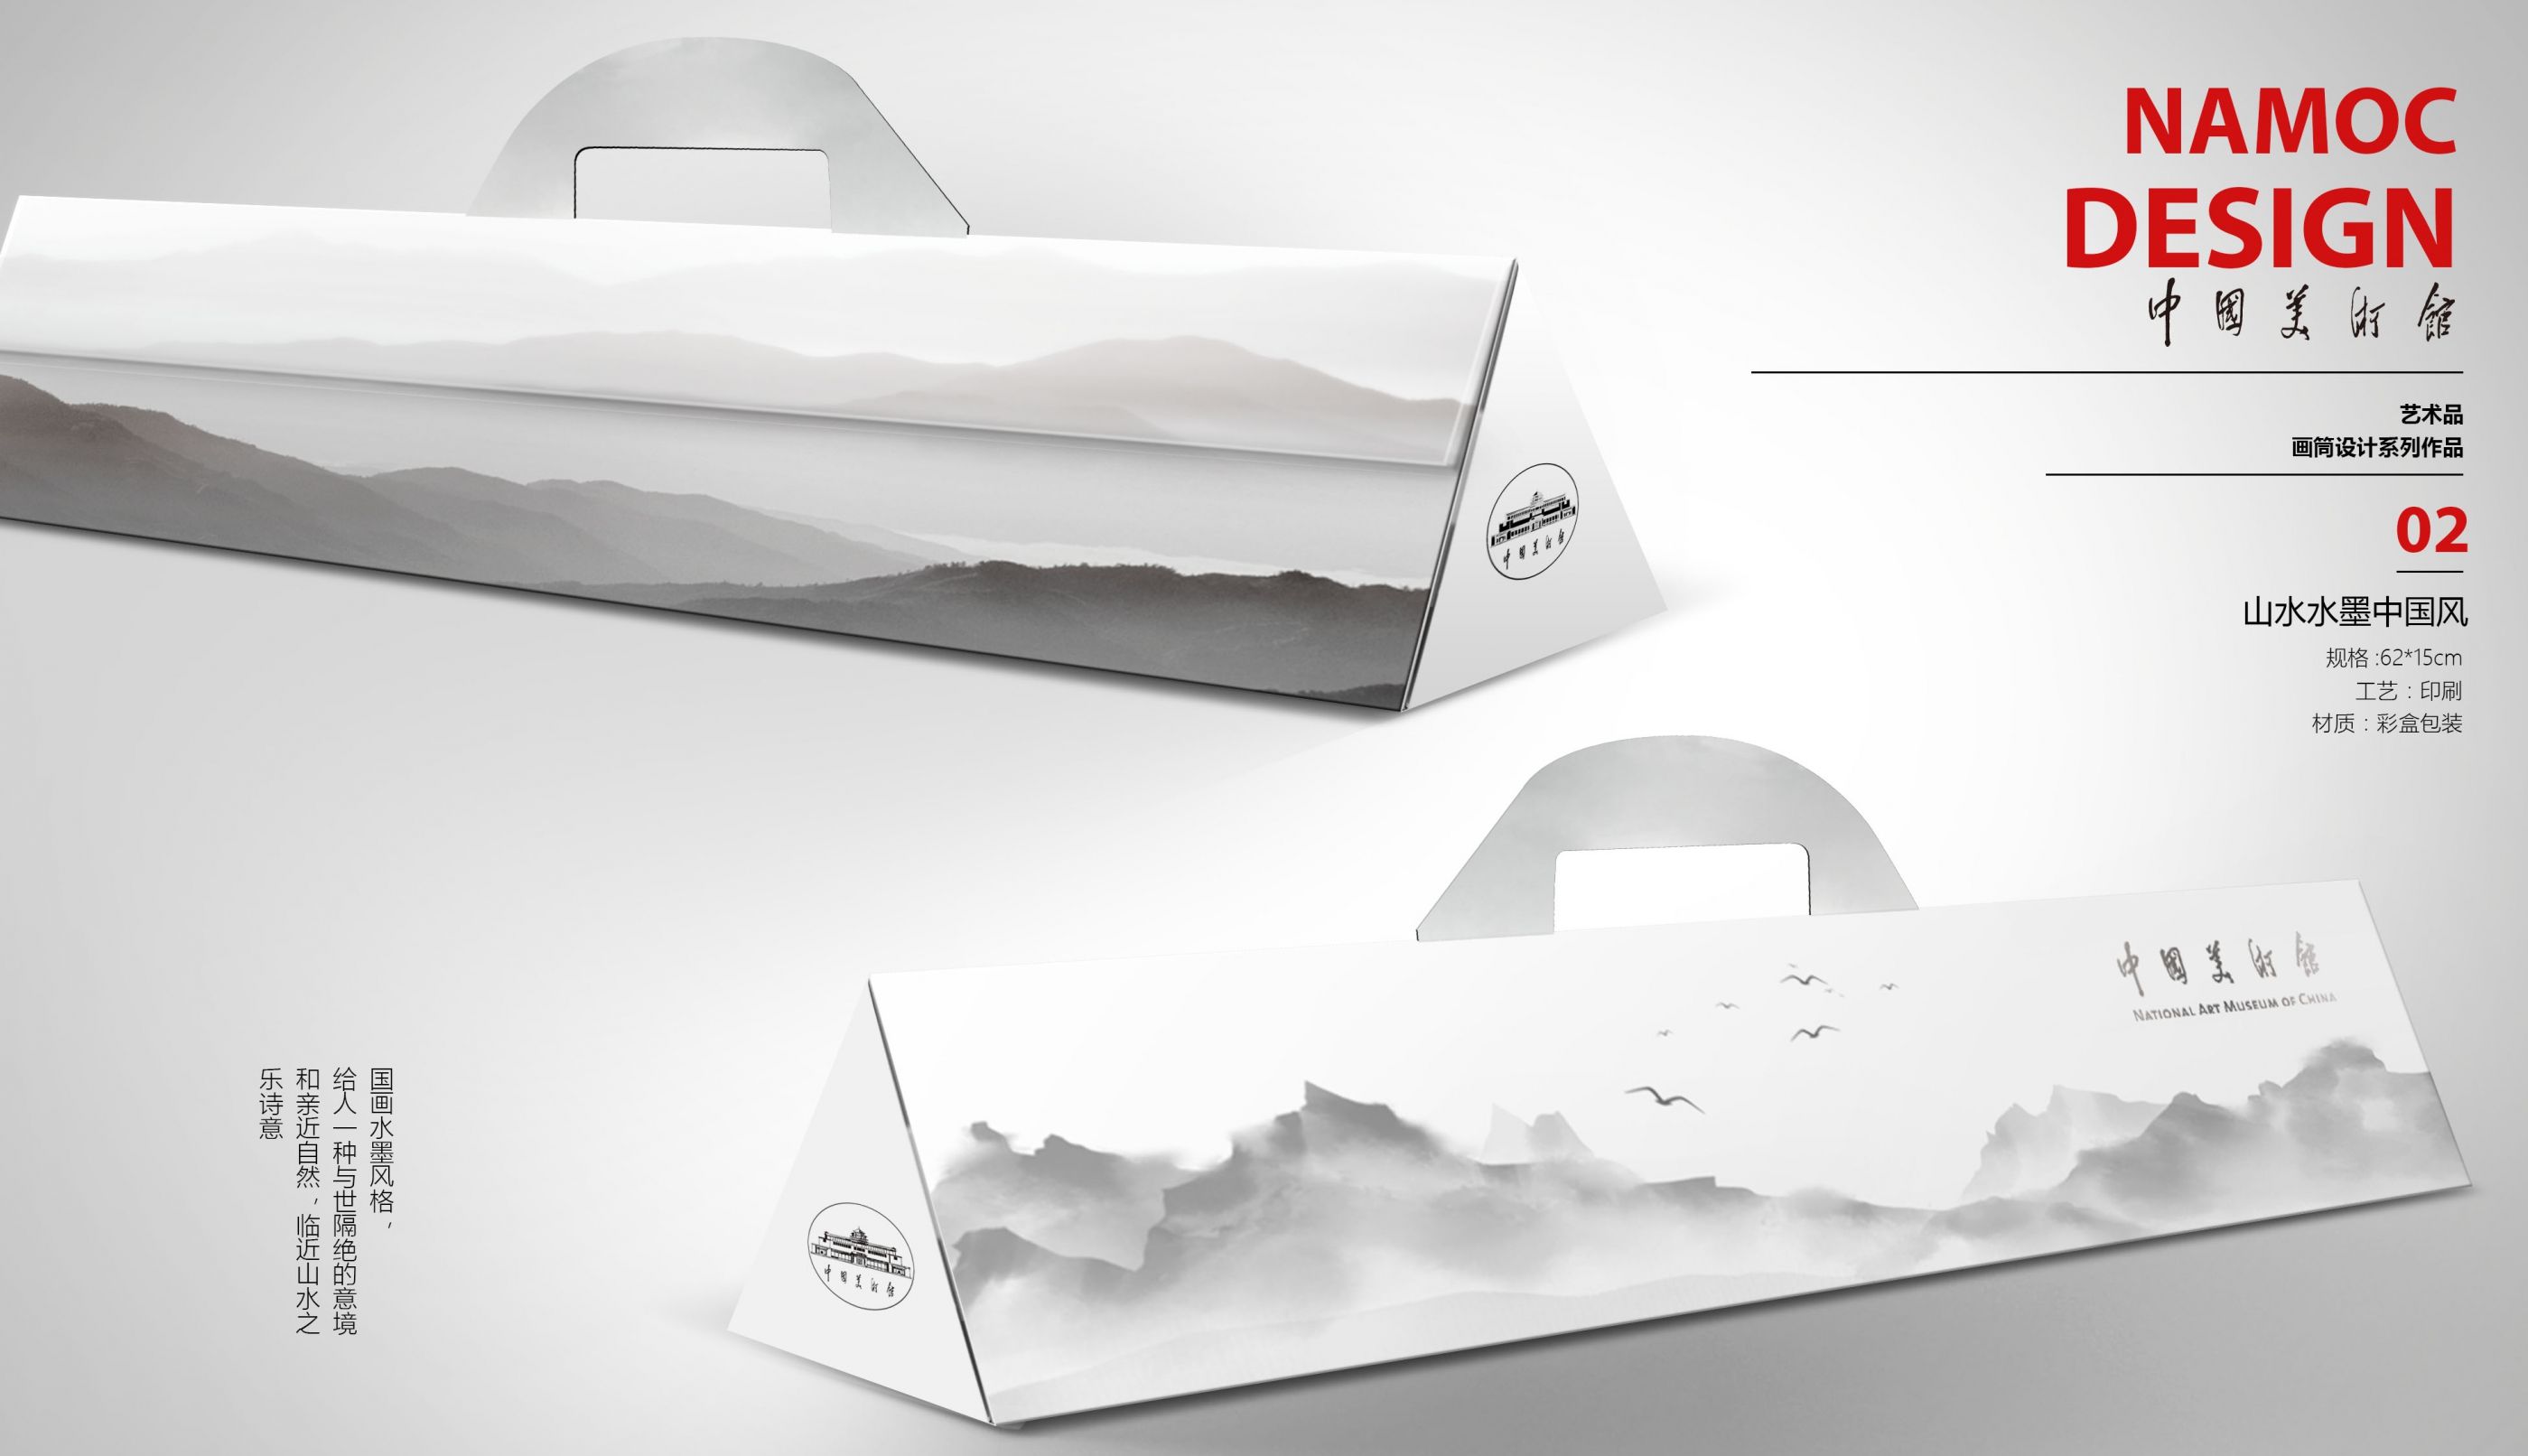 三角形画卷包装盒设计 飞特网会员原创产品包装设计